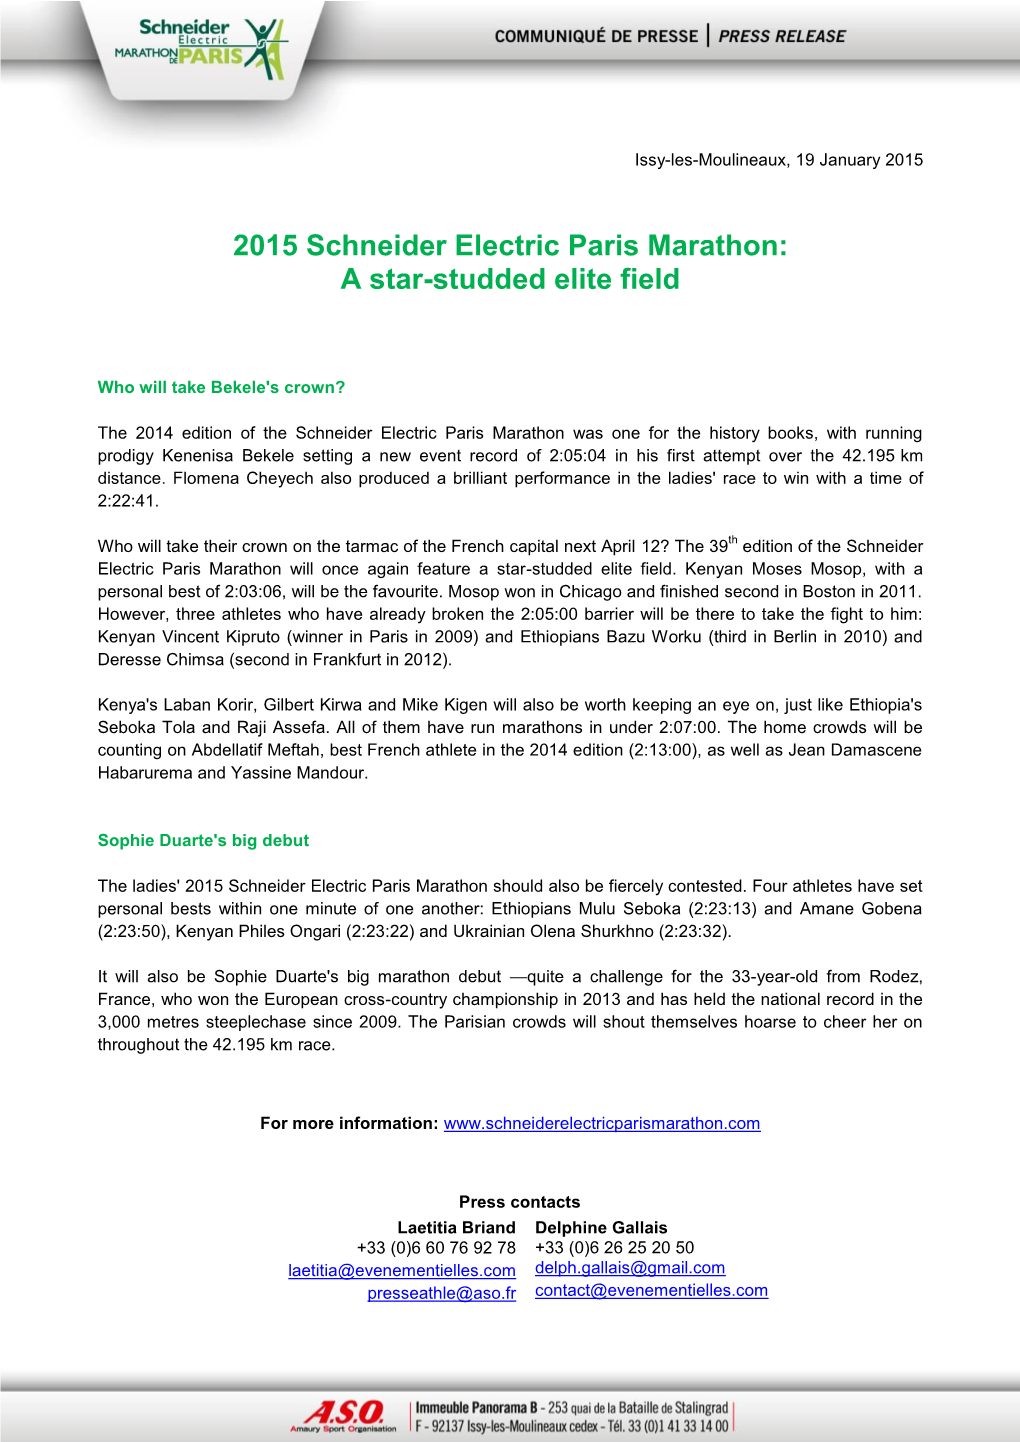 2015 Schneider Electric Paris Marathon: a Star-Studded Elite Field